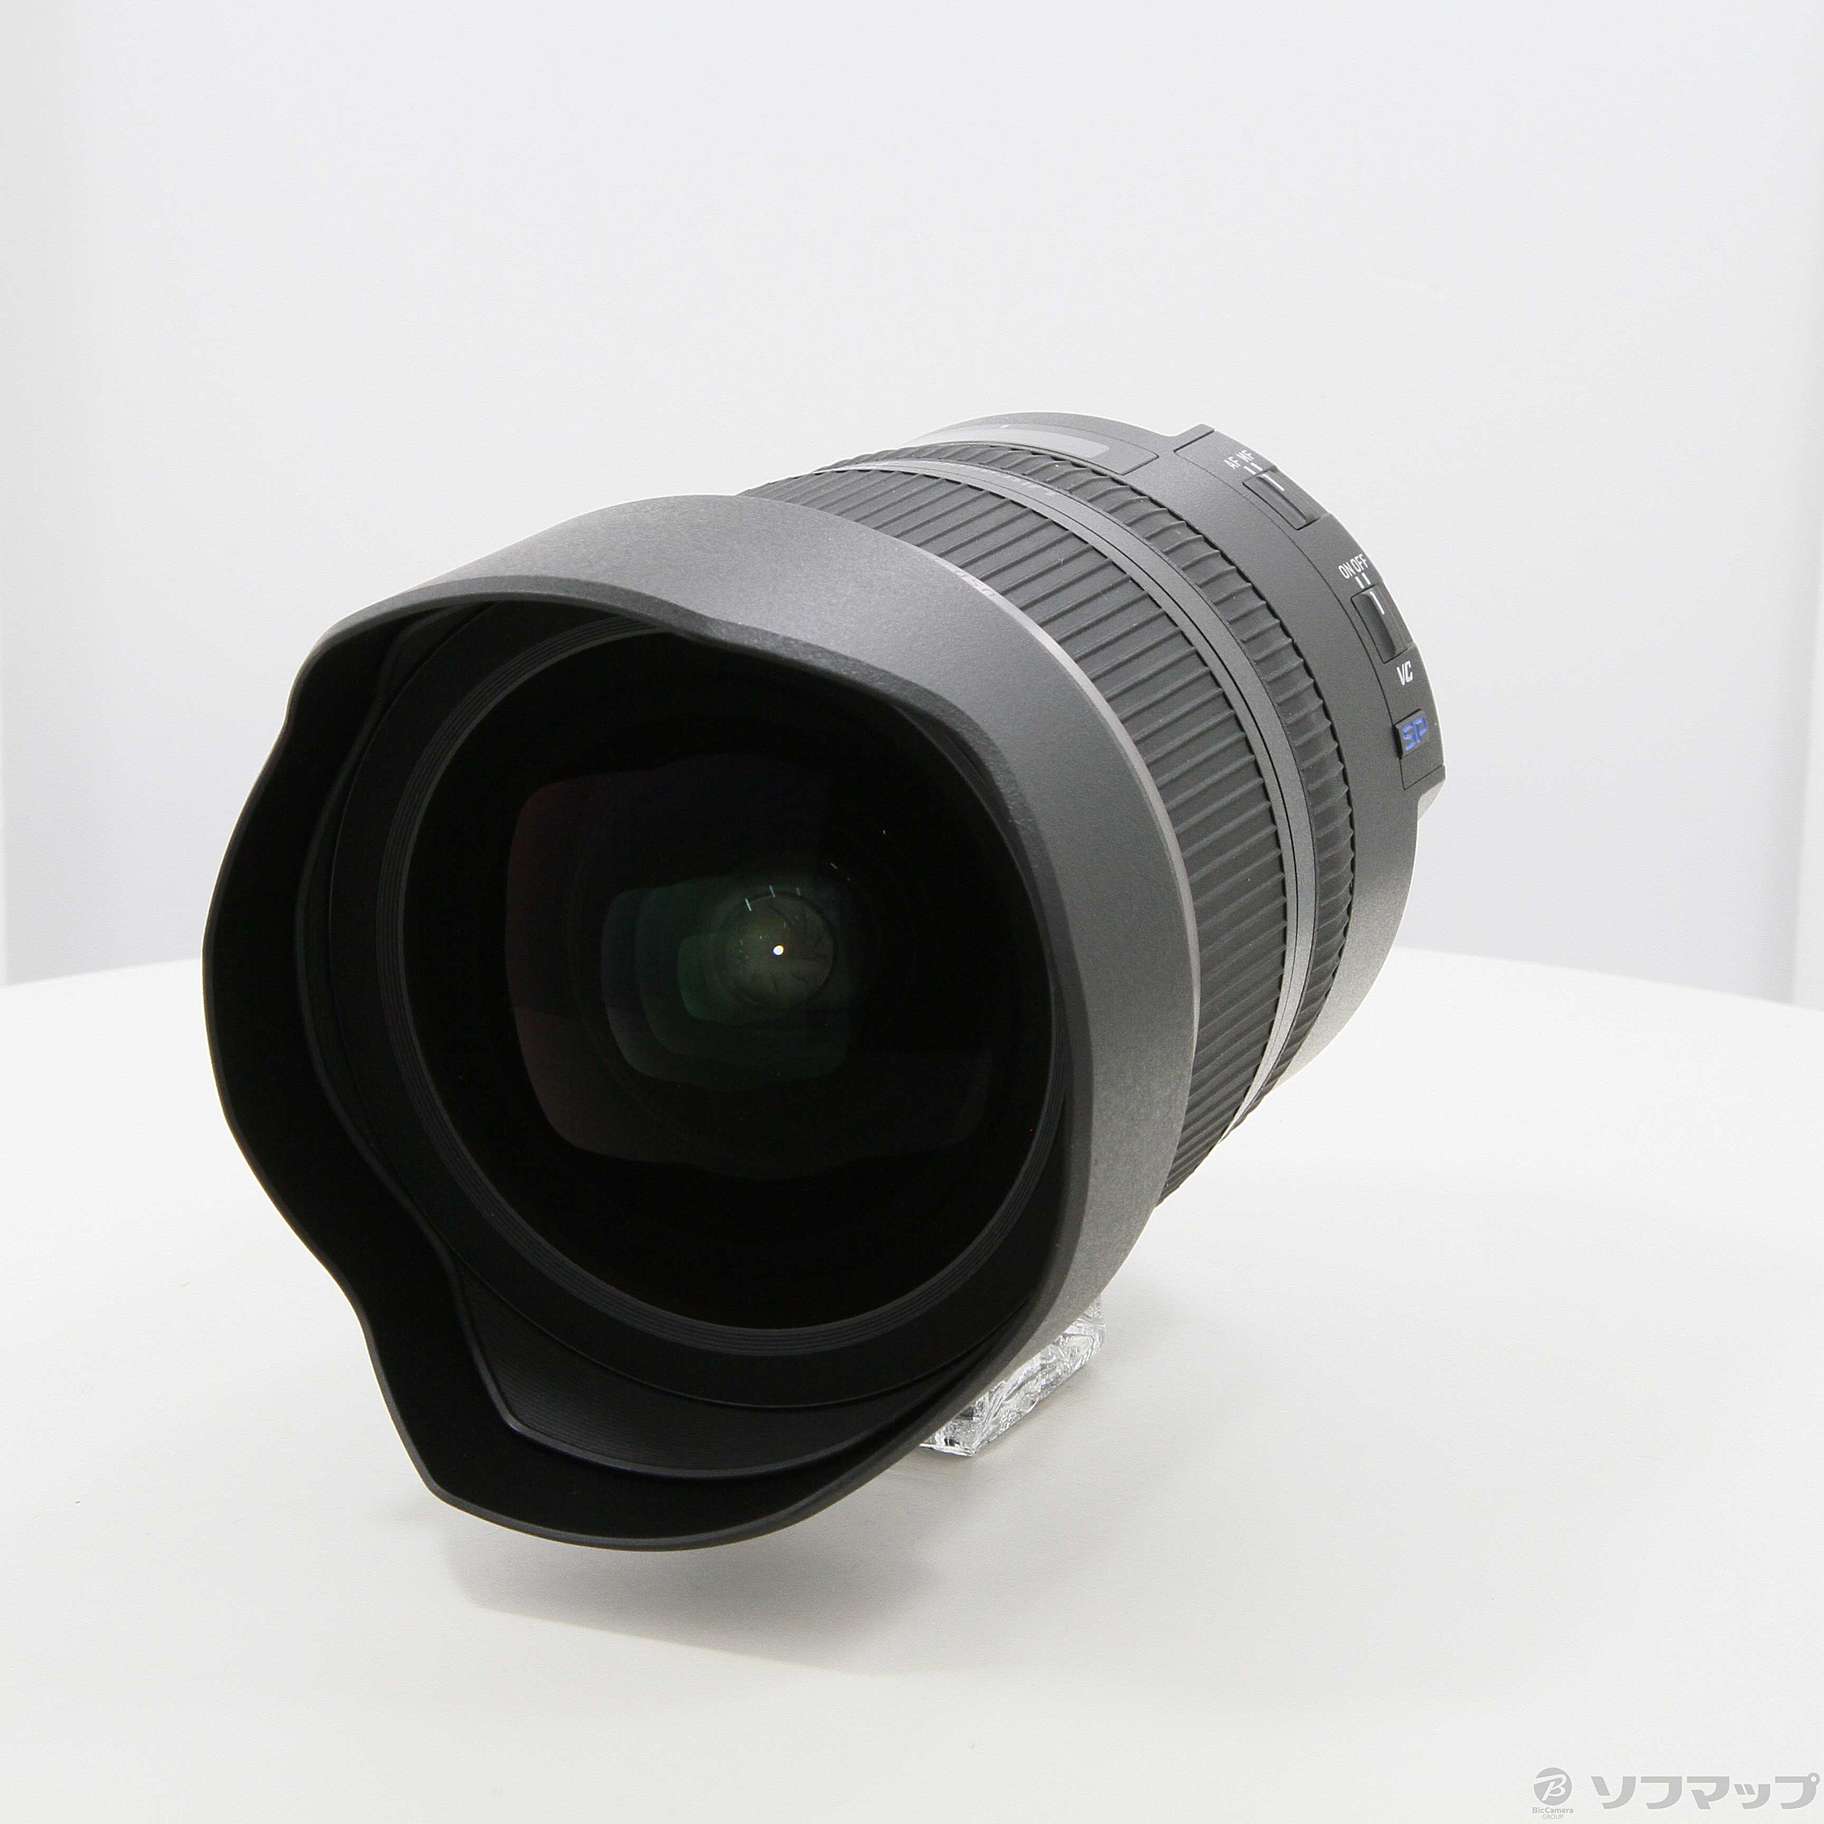 中古】TAMRON SP 15-30mm F2.8 Di VC USD (A012N) (Nikon用レンズ